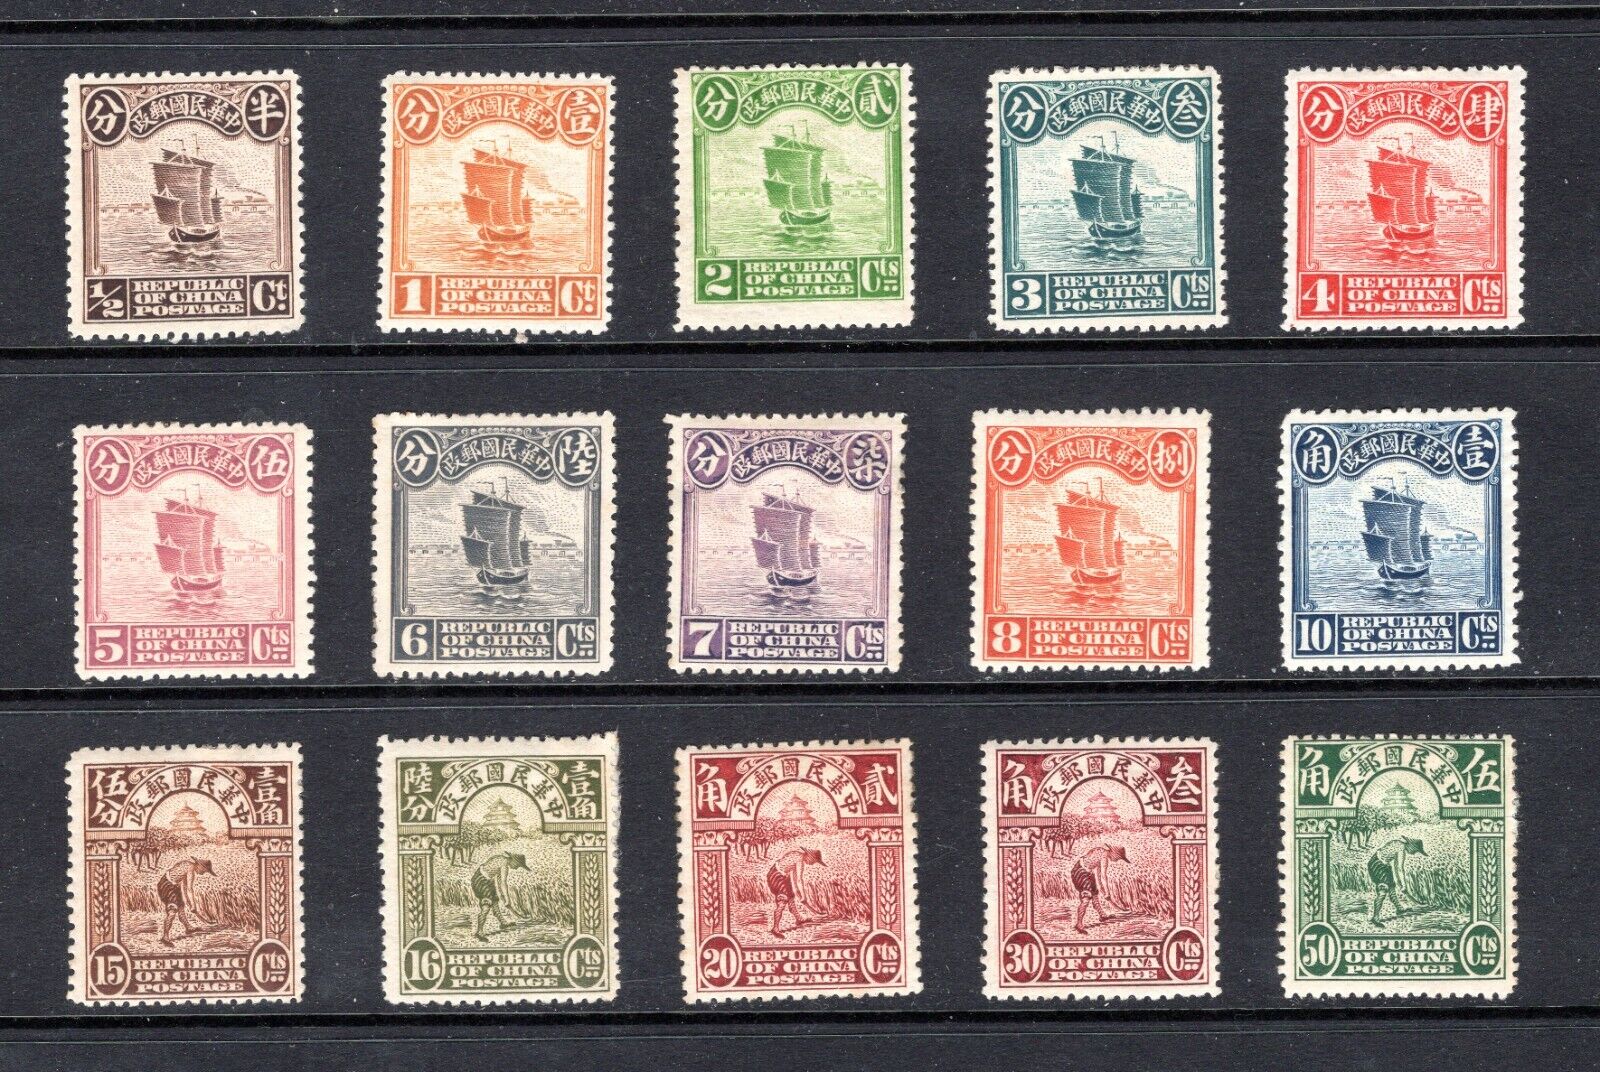 1913 China Junk London Print 0.5c to 50c, SC#202-216 MH